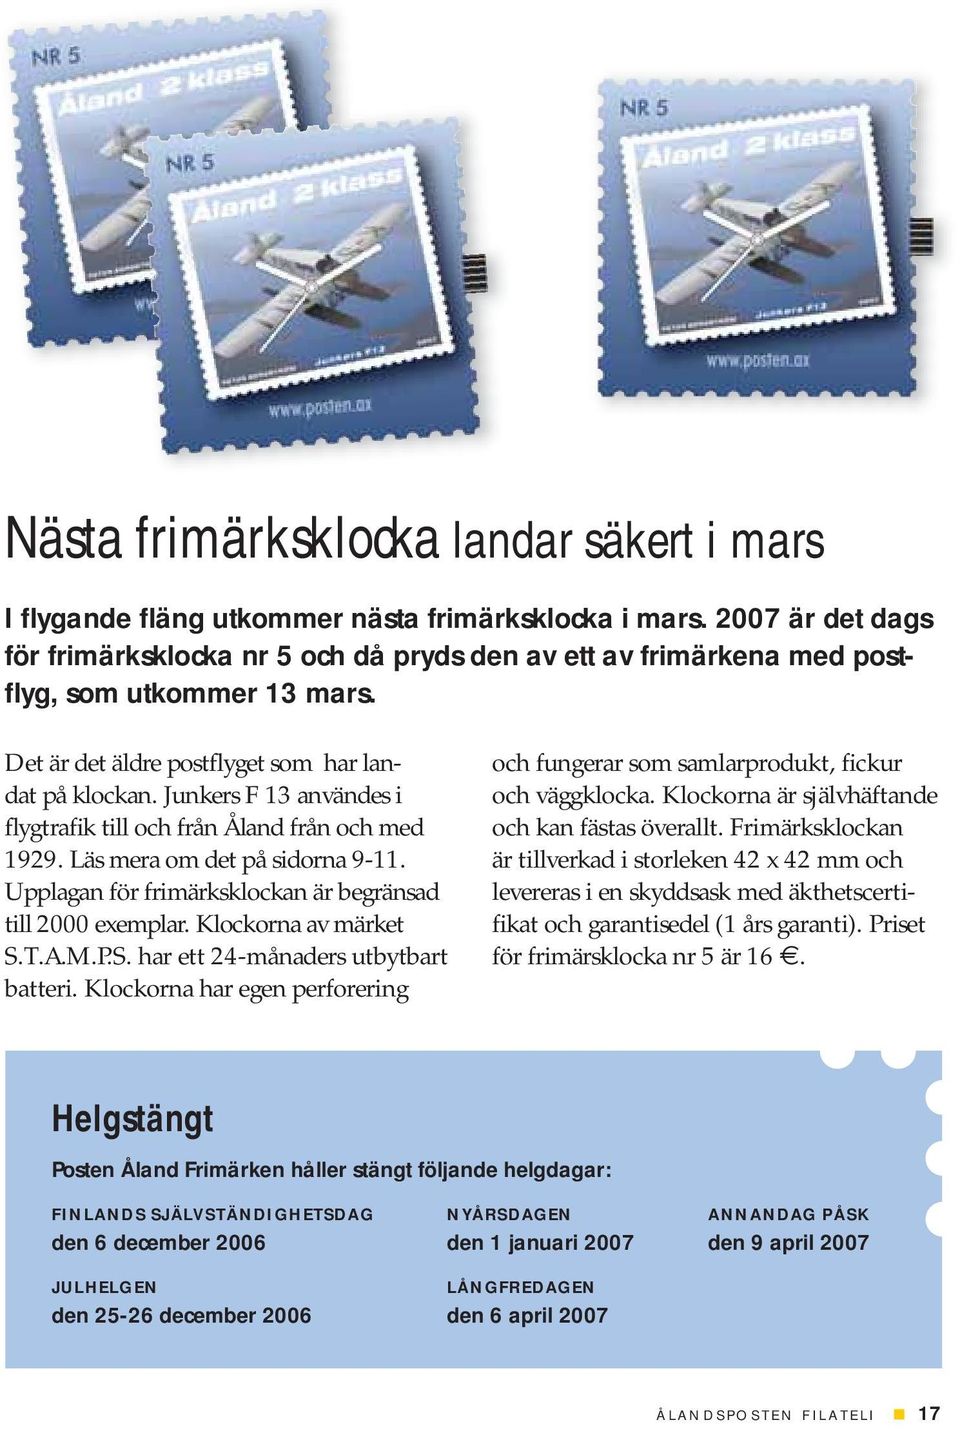 Junkers F 13 användes i flygtrafik till och från Åland från och med 1929. Läs mera om det på sidorna 9-11. Upplagan för frimärksklockan är begränsad till 2000 exemplar. Klockorna av märket S.T.A.M.P.